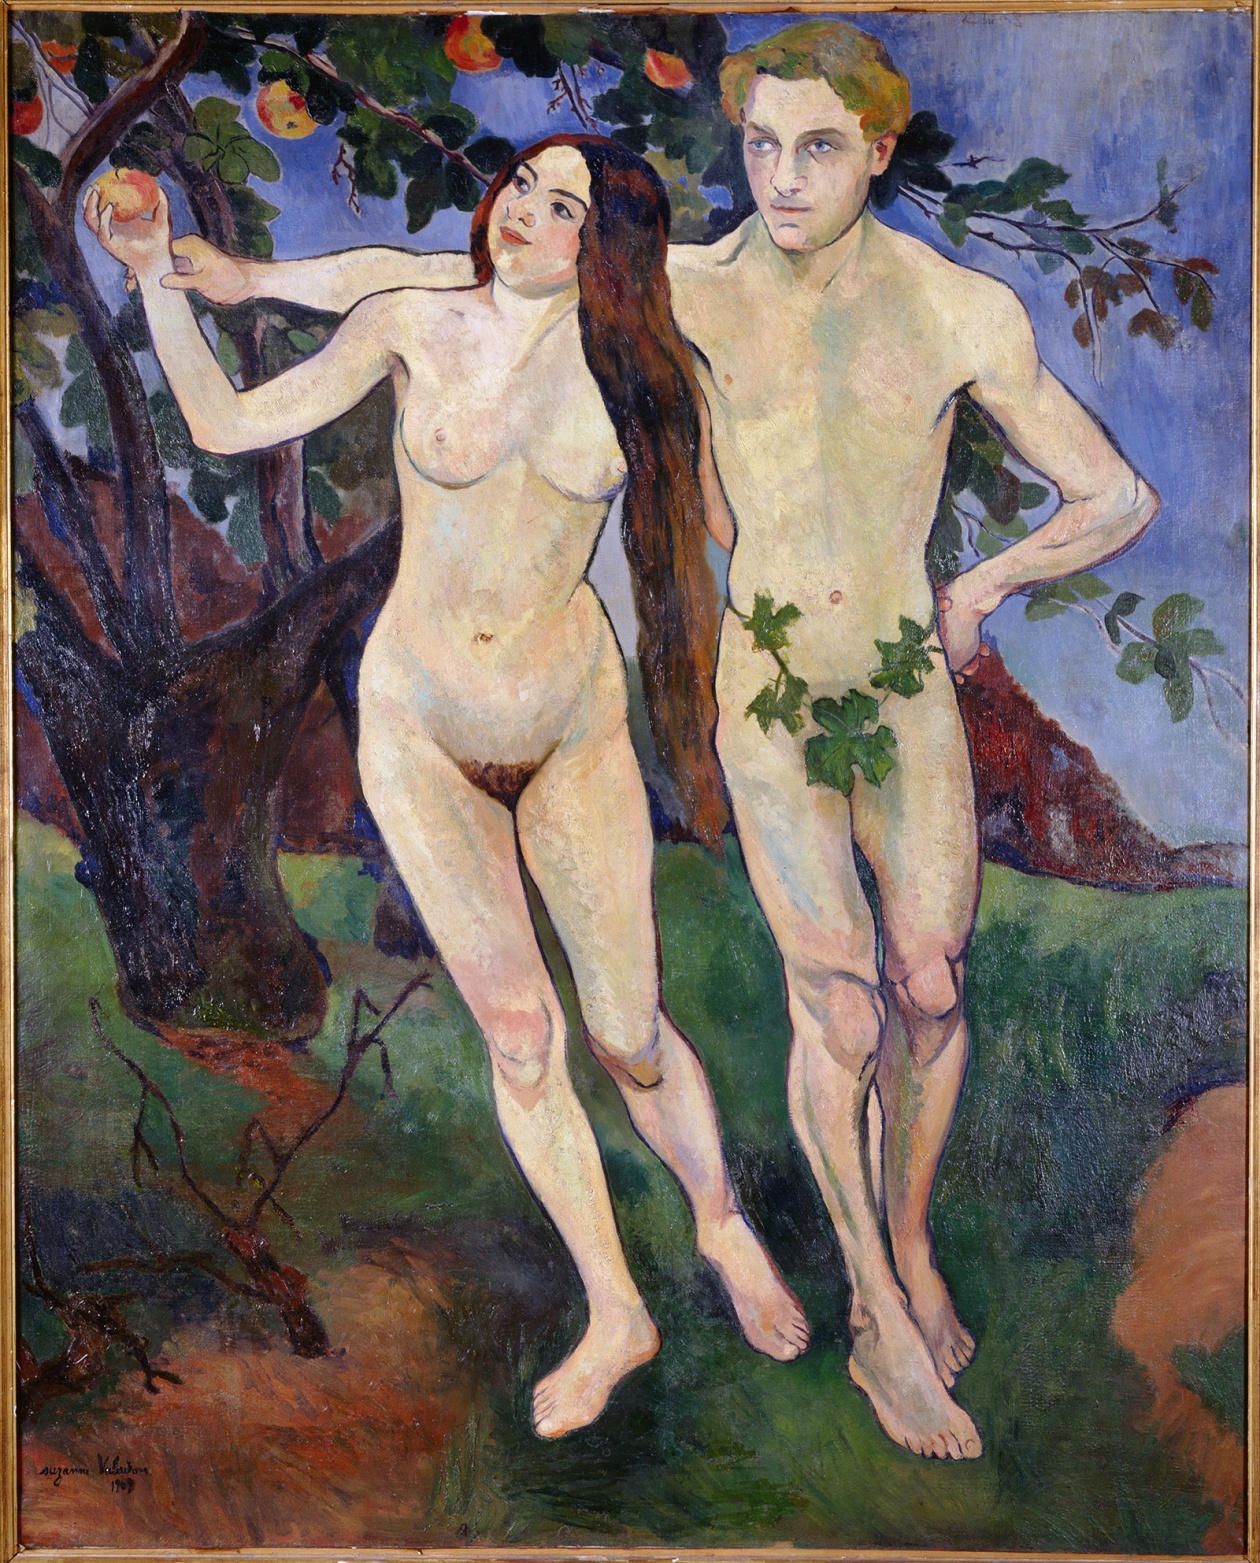 Das Kunstwerk - Suzanne Valadon
Adam und Eva